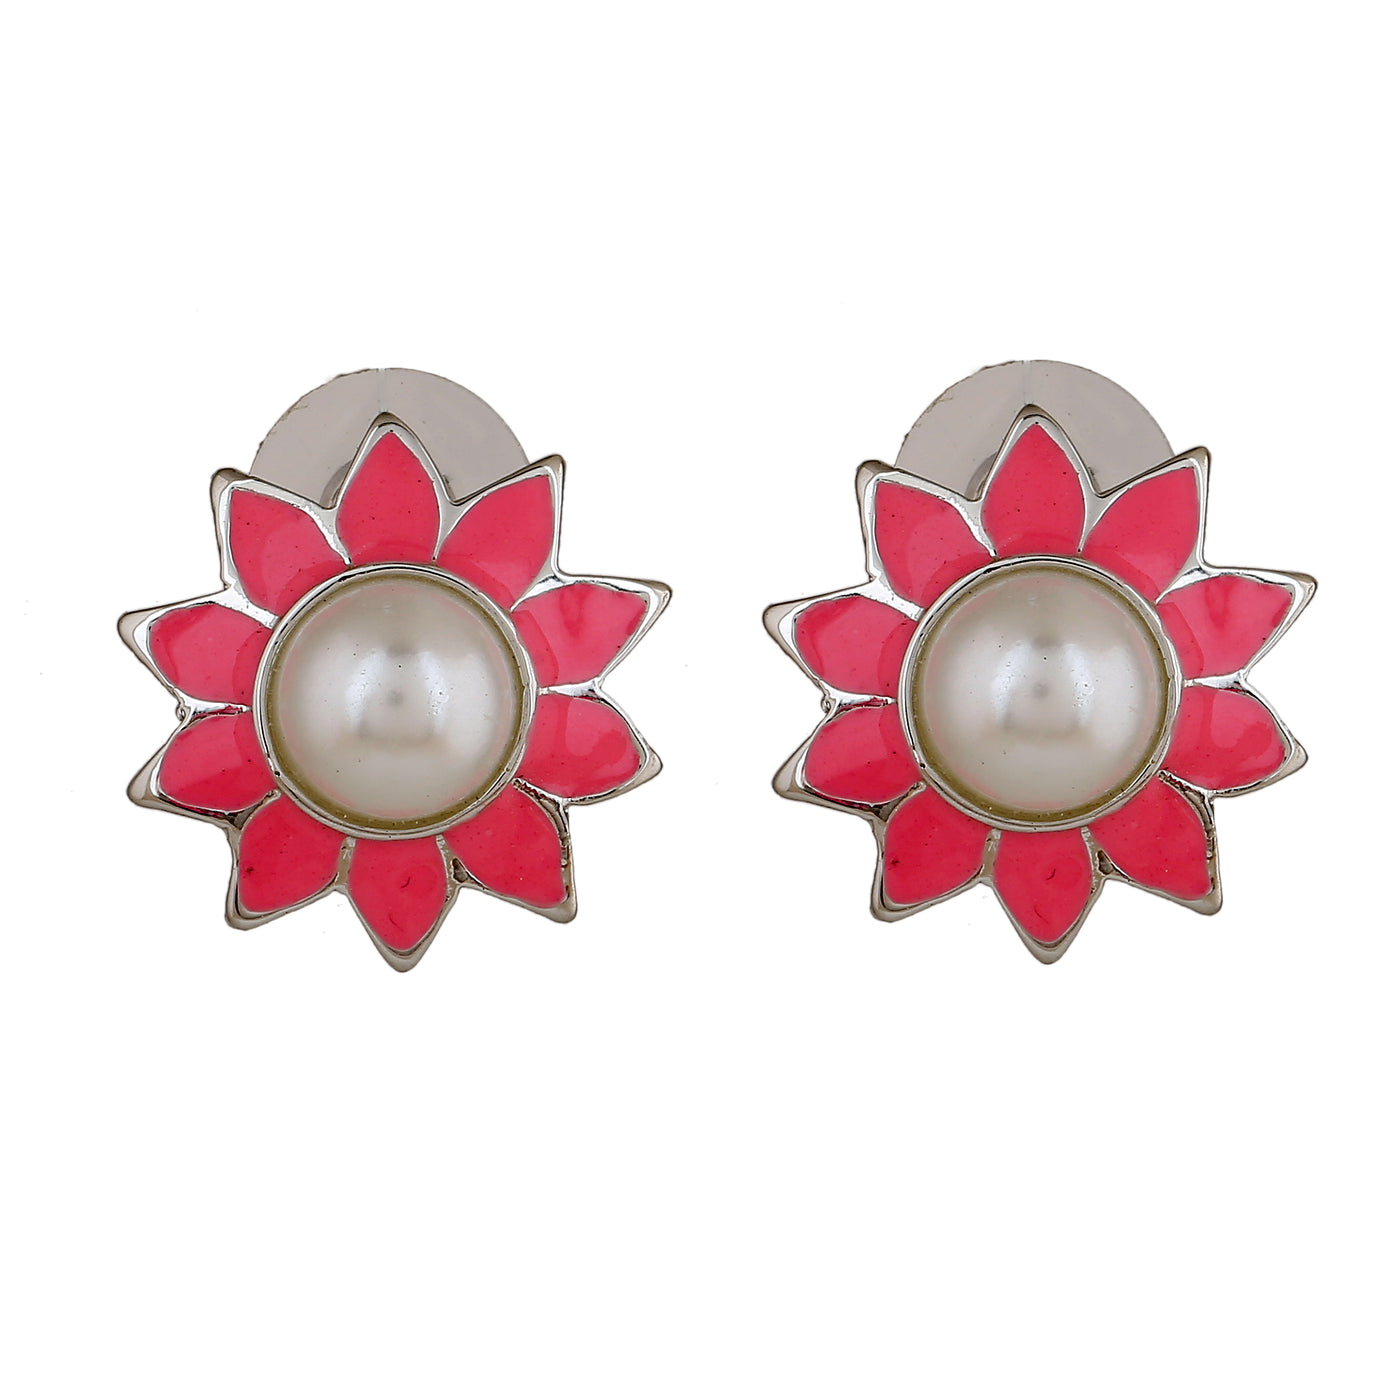 Estele Rhodium Plated Lovely Meenakari Pearl Stud Earrings with Pink Enamel for Women